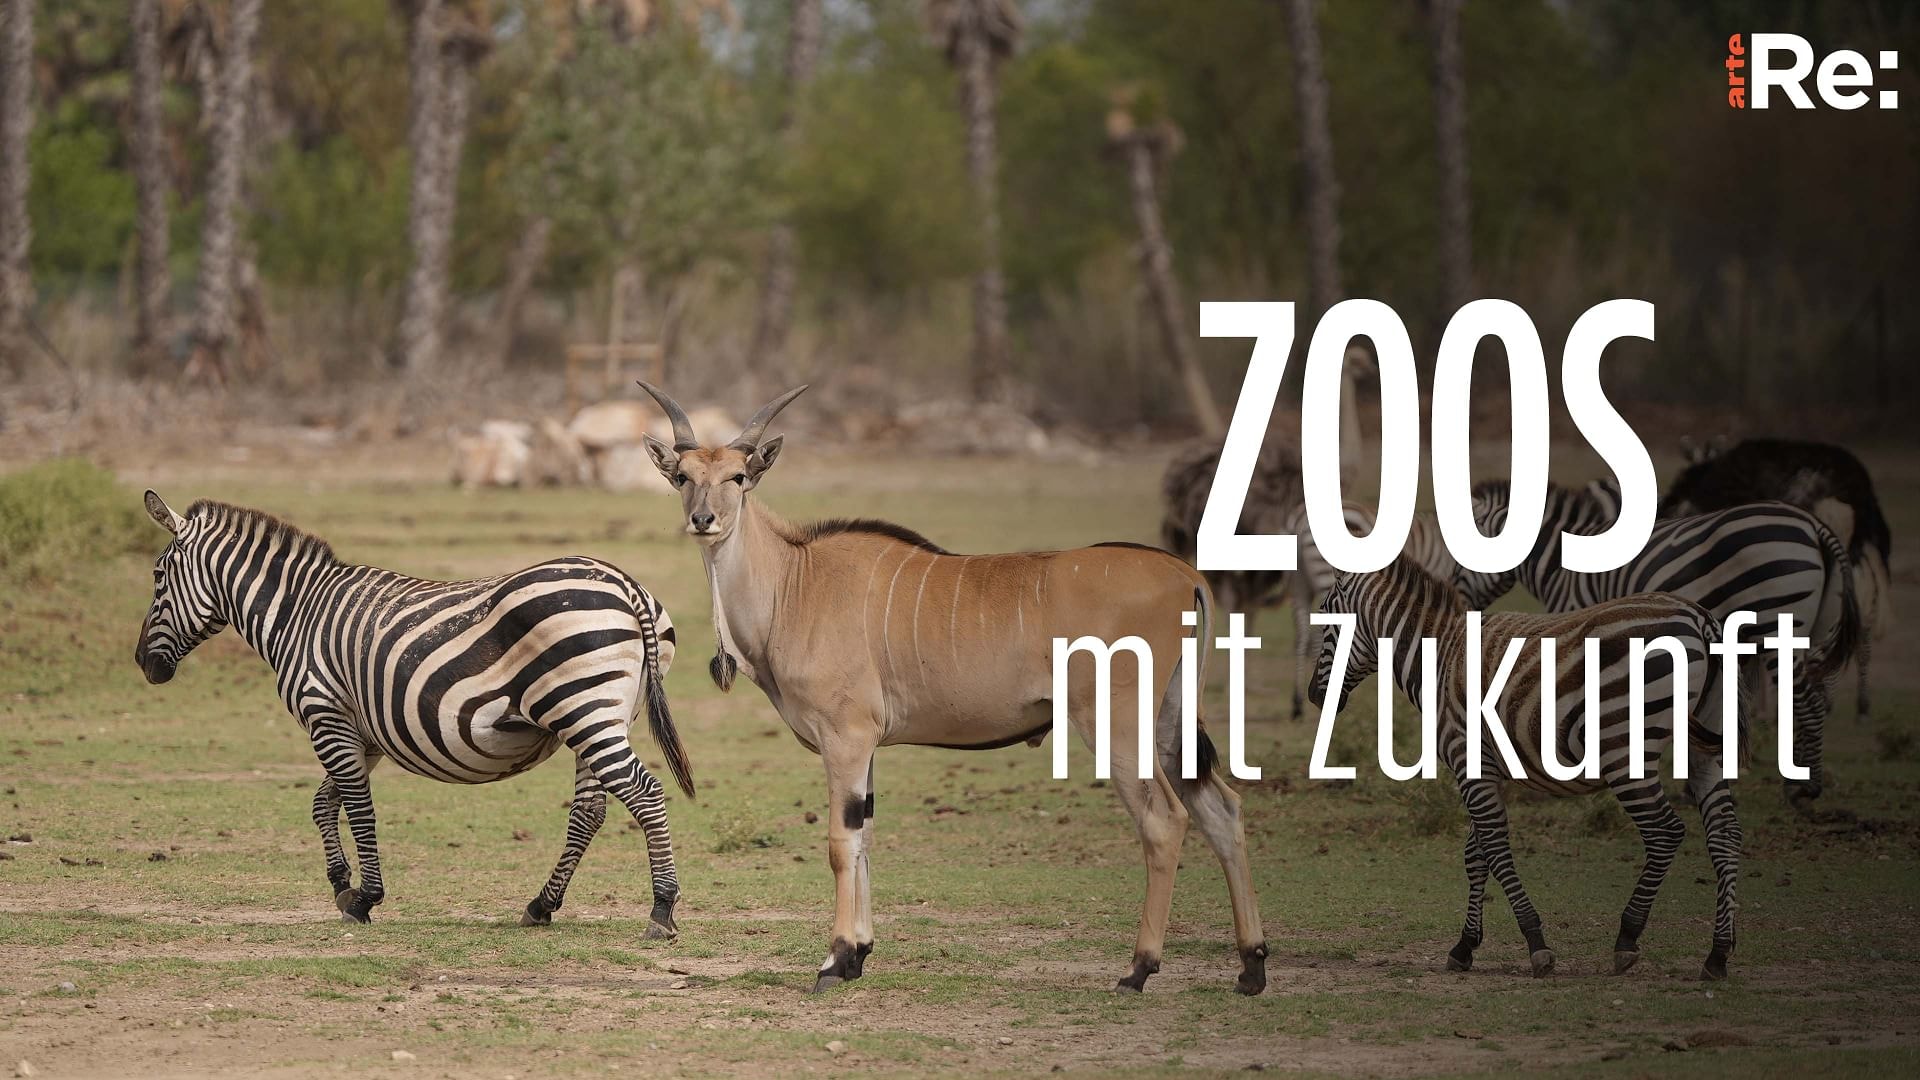 Re: Zoos mit Zukunft